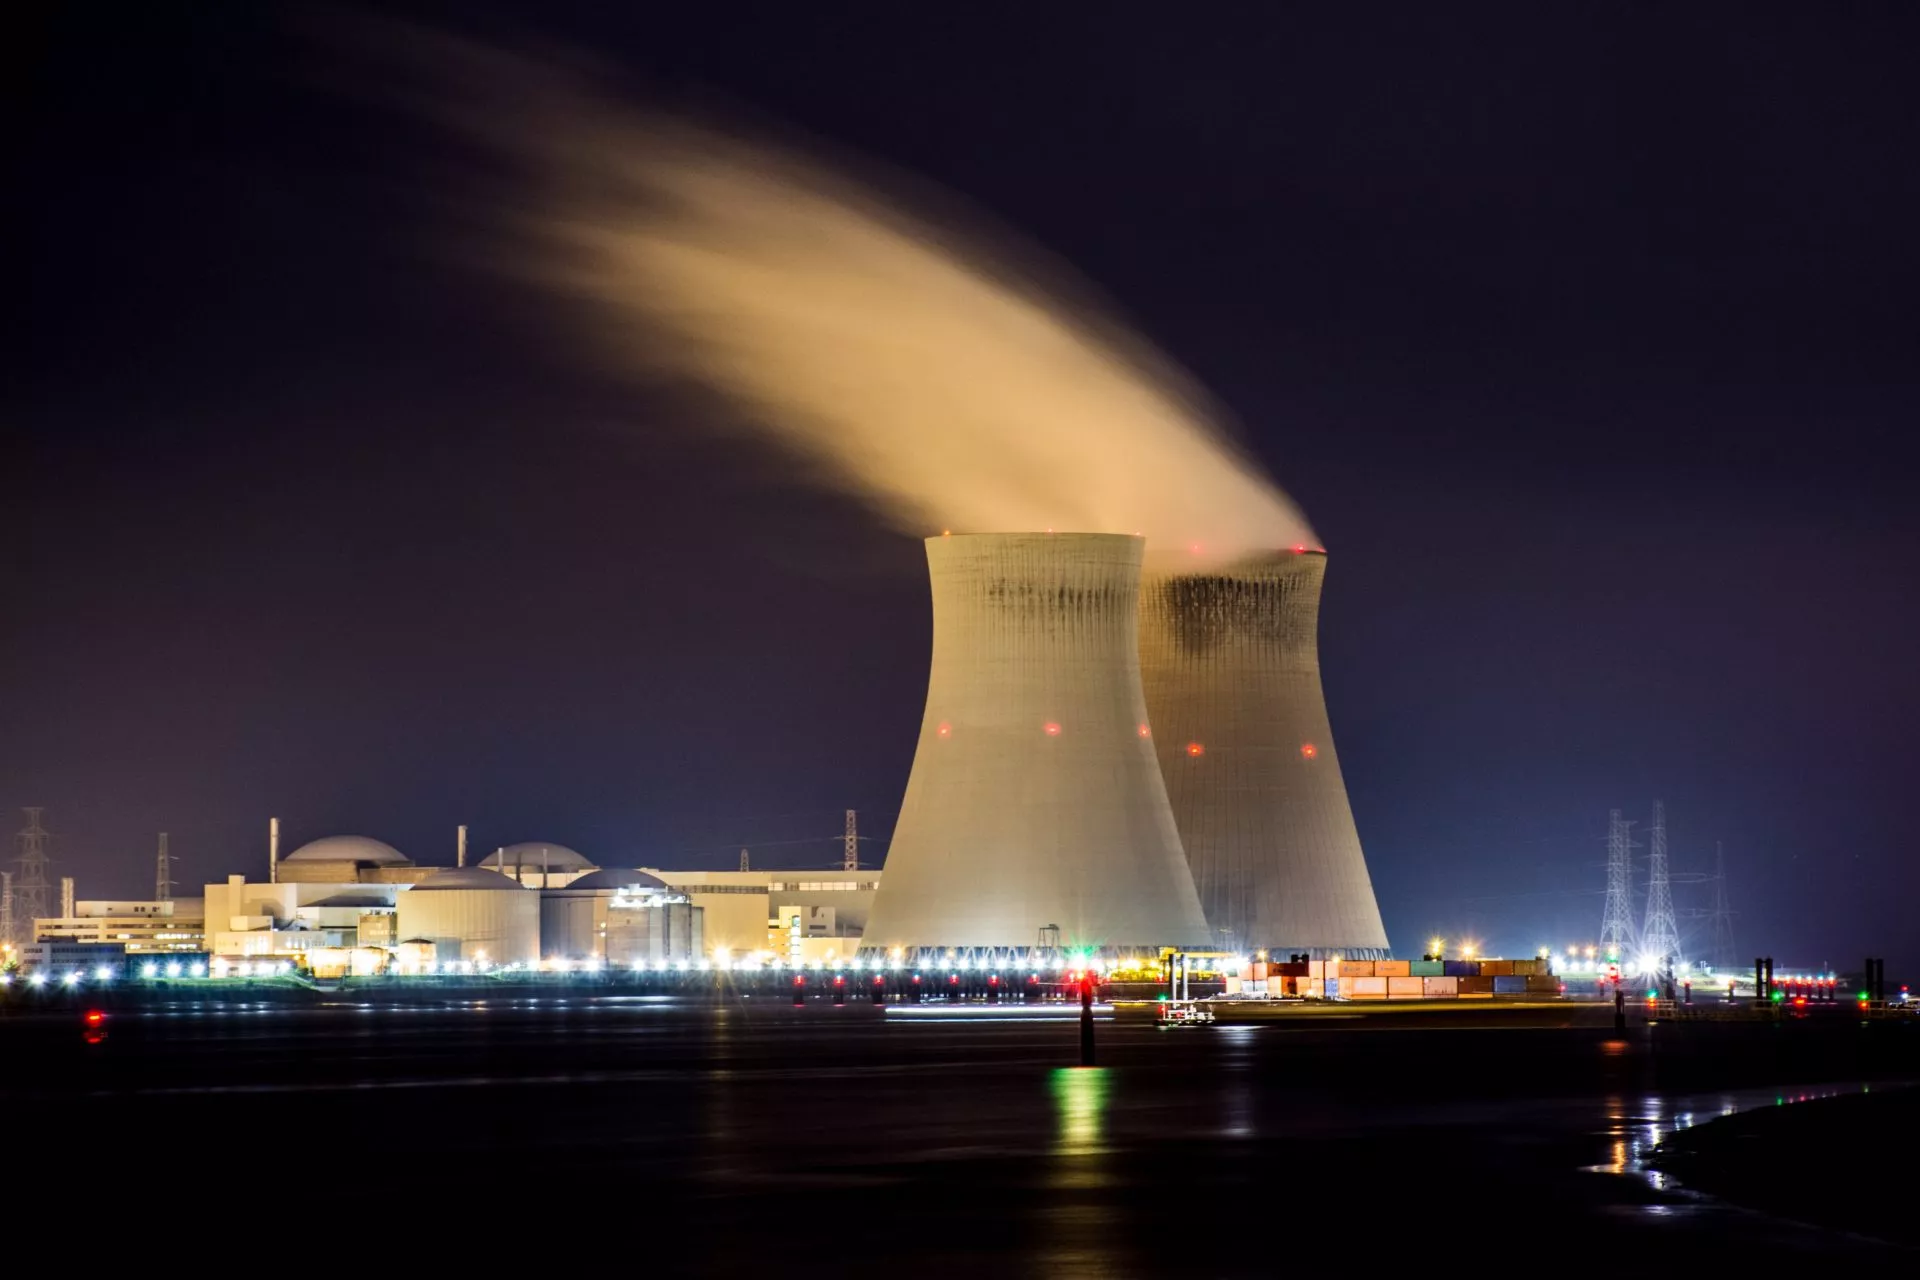 Bitcoin-miners kijken naar kernenergie voor duurzame energie